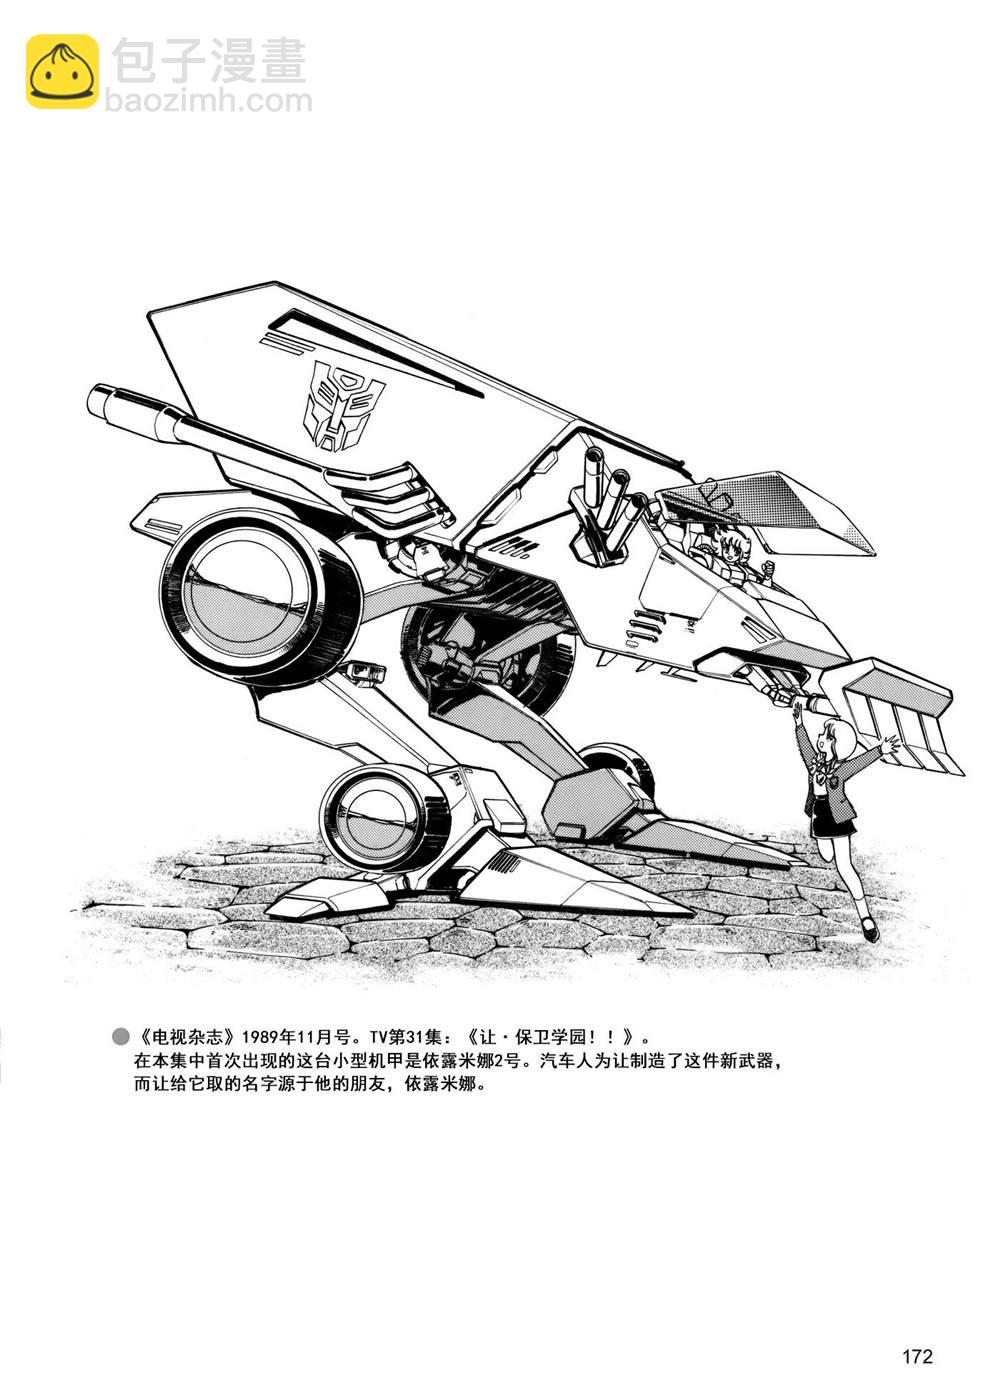 變形金剛日版G1雜誌插畫 - 戰鬥吧！超機械生命體變形金剛：勝利之鬥爭 - 5